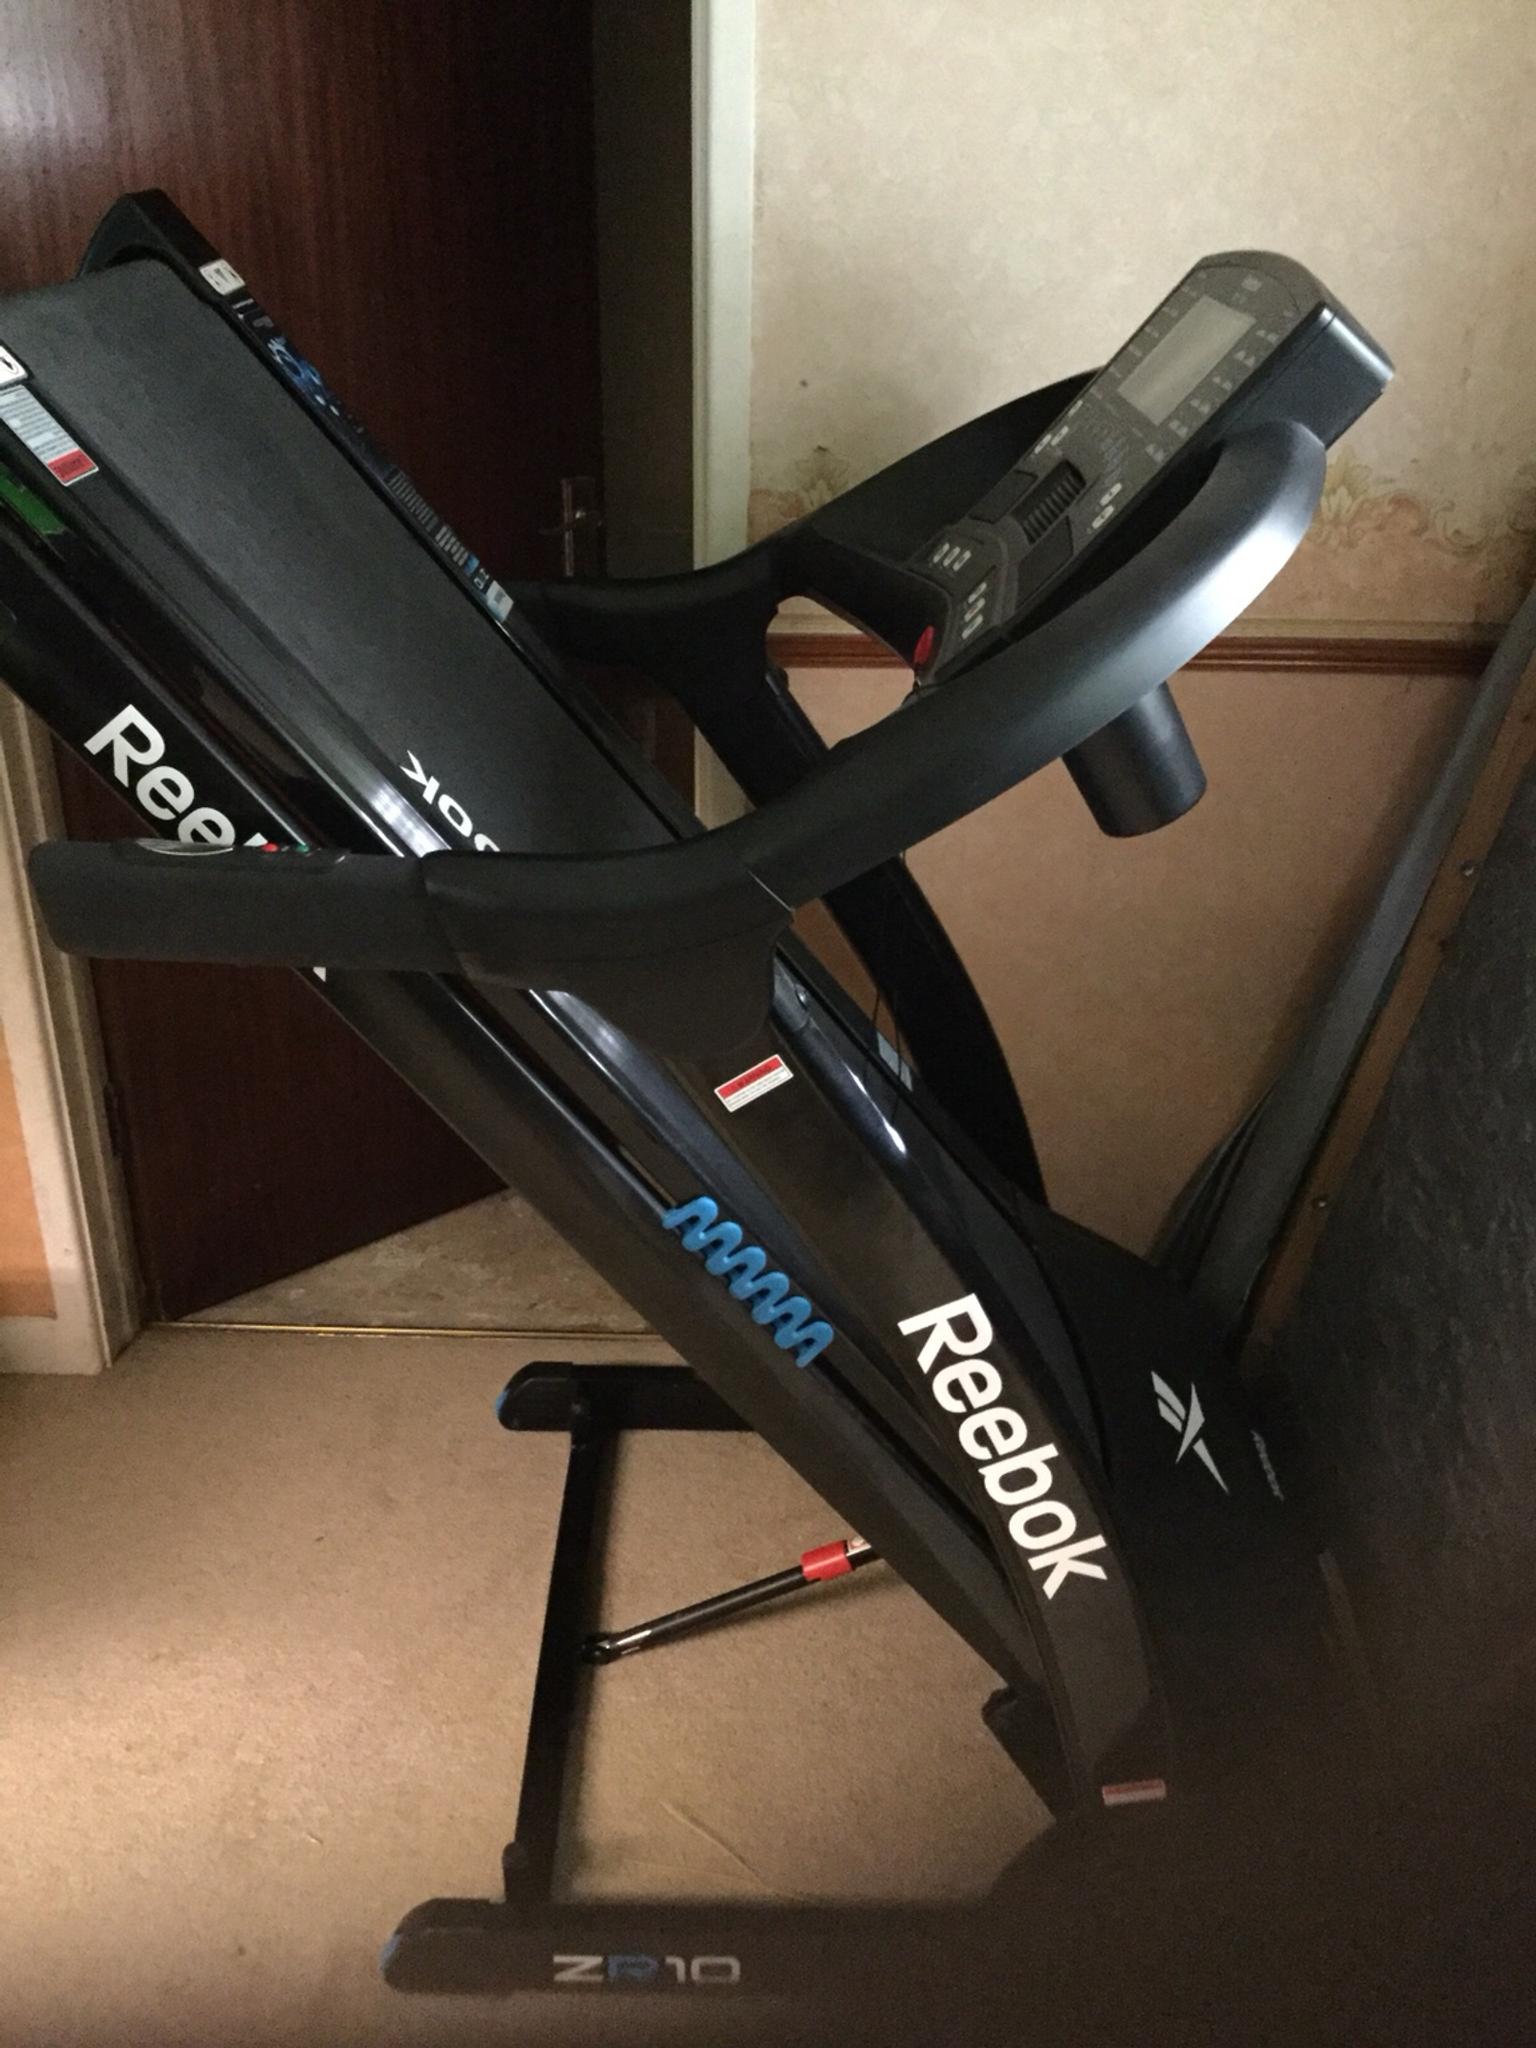 reebok zr10 treadmill - 59% OFF 